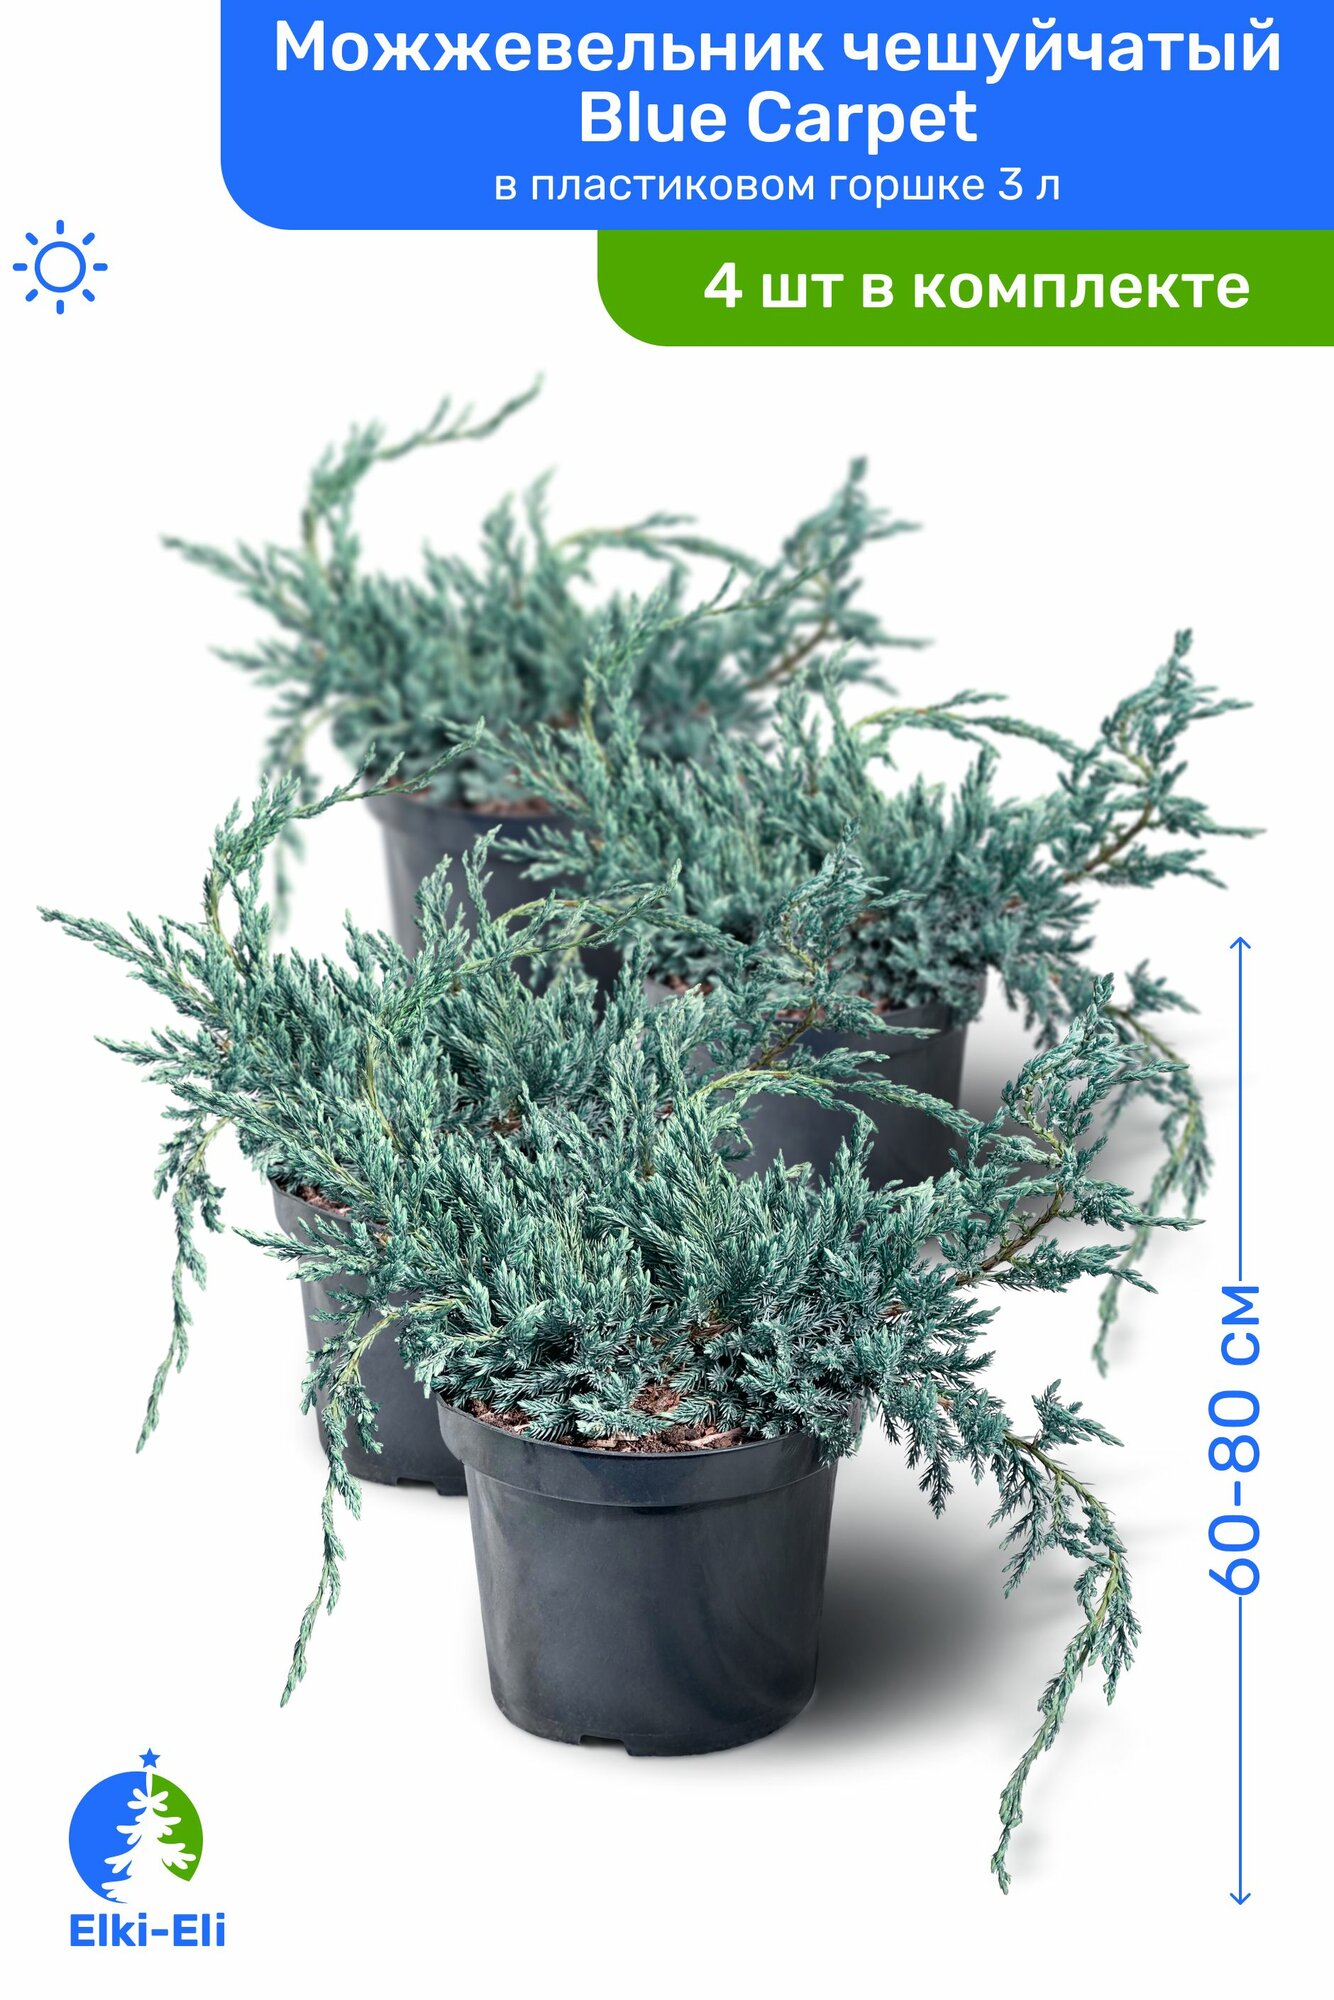 Можжевельник чешуйчатый Blue Carpet (Блю Карпет) 60-80 см в пластиковом горшке С3, саженец, хвойное живое растение, комплект из 4 шт